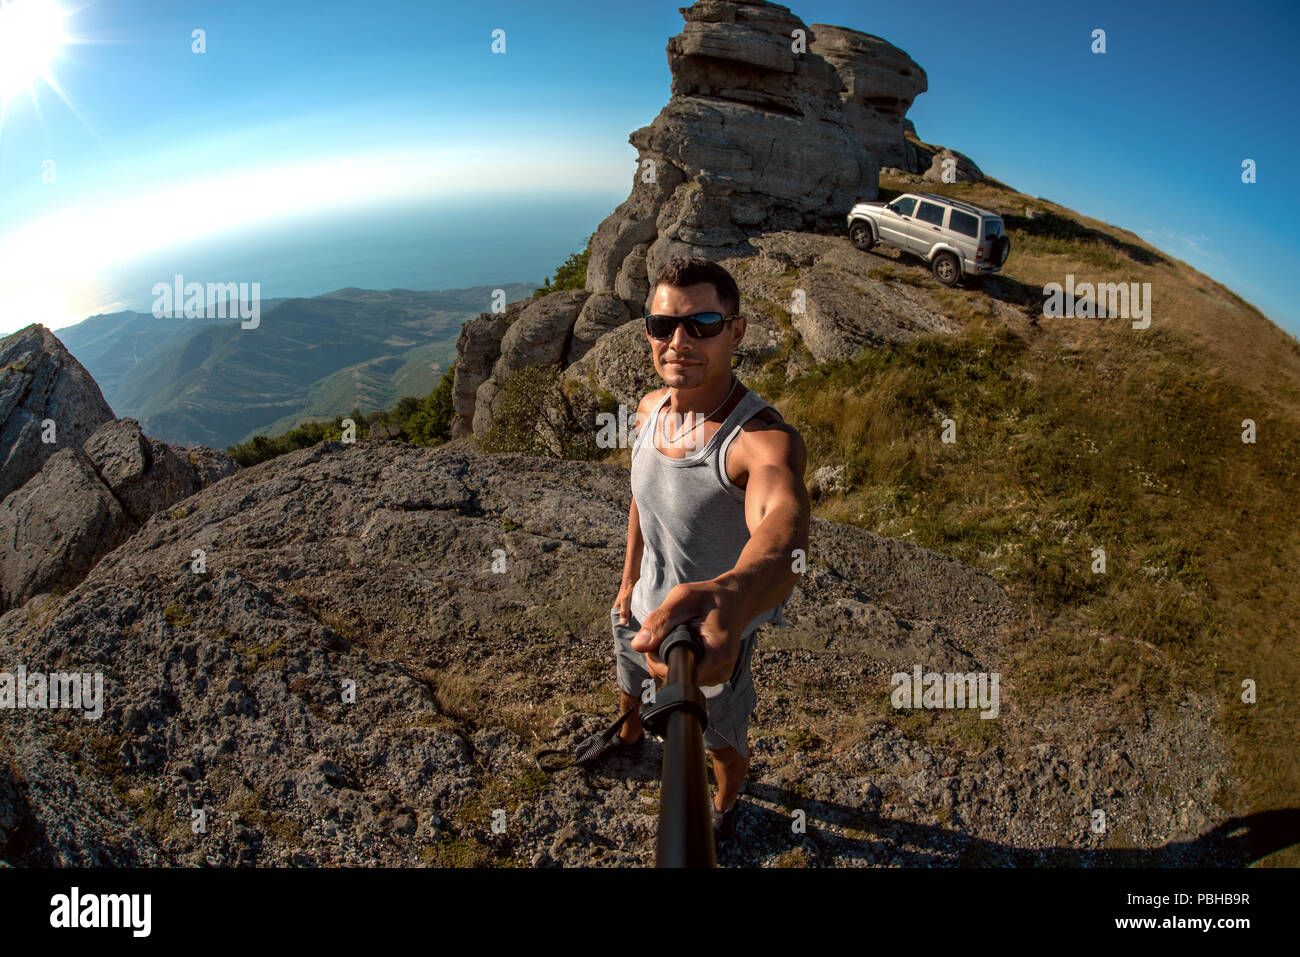 Mann fotografieren selfie auf Berg Hintergrund, aus Reisen - Straße auf dem Auto Konzept, horizontale Foto Stockfoto